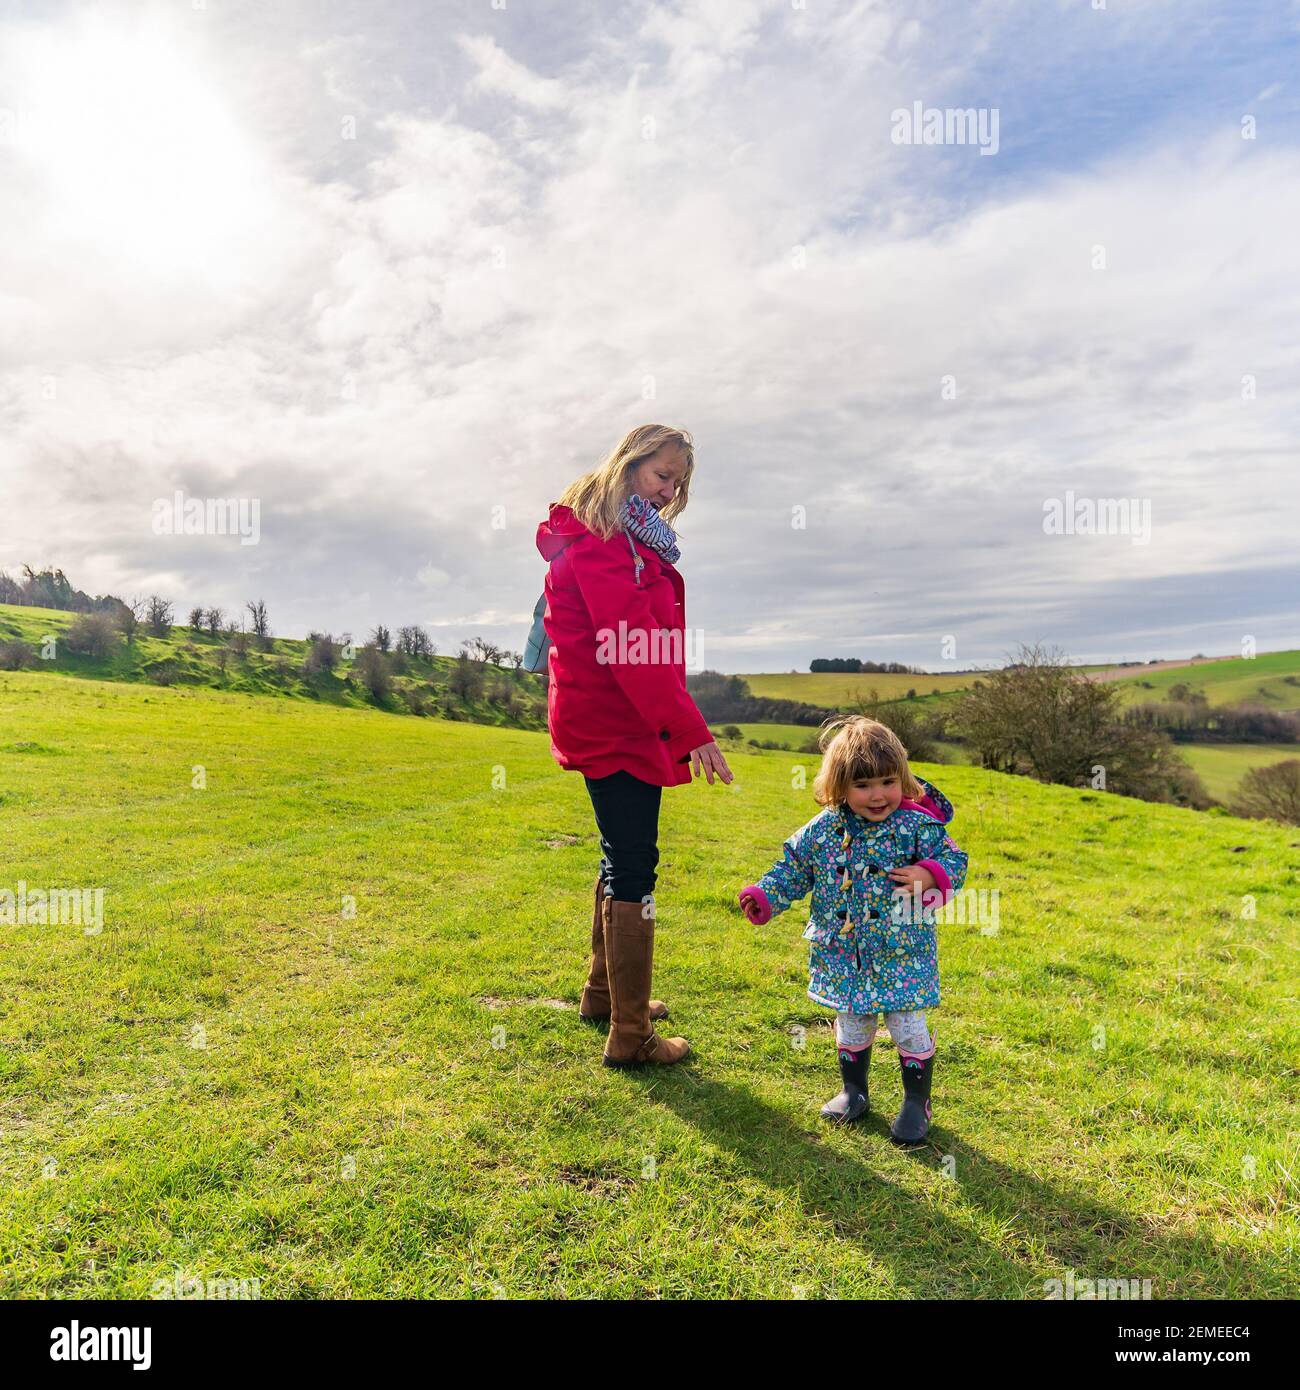 Jeune femme mûre avec un petit enfant souriant heureux appréciant du temps à l'extérieur dans la campagne, au printemps Banque D'Images